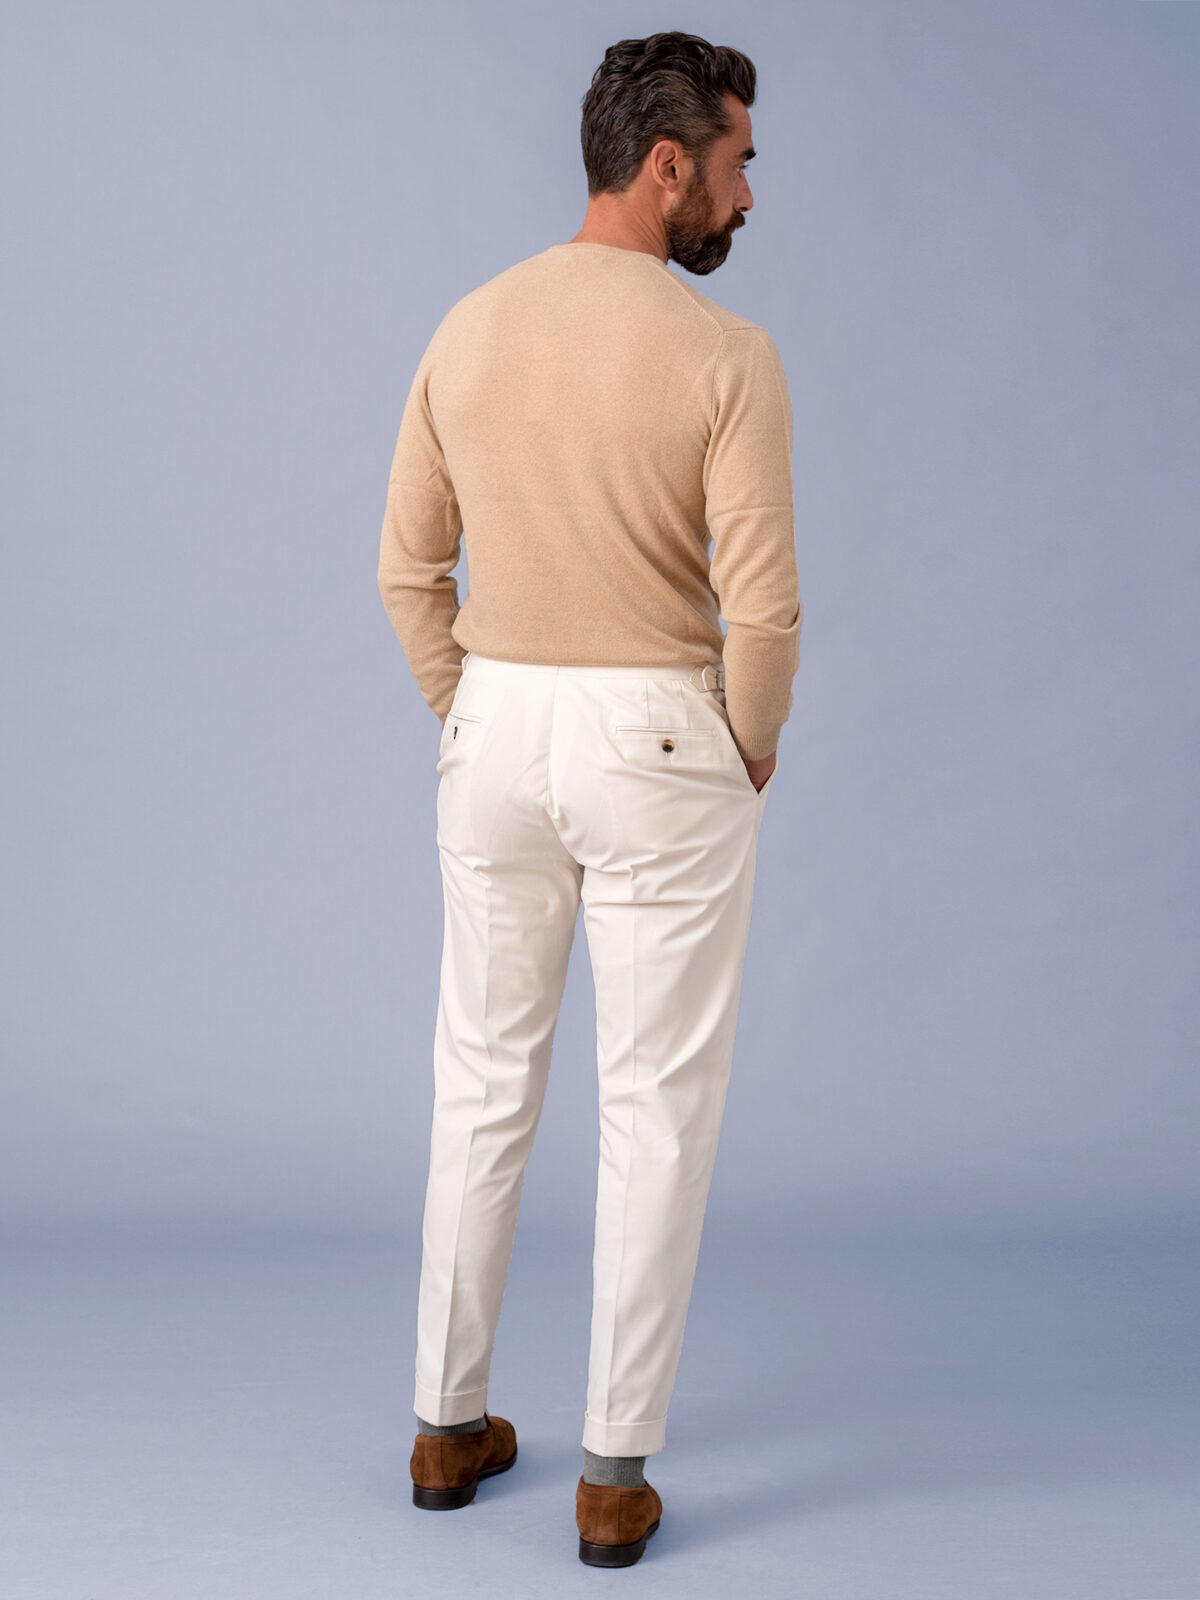 Off White Color Cotton Trouser Pants for Men – Punekar Cotton